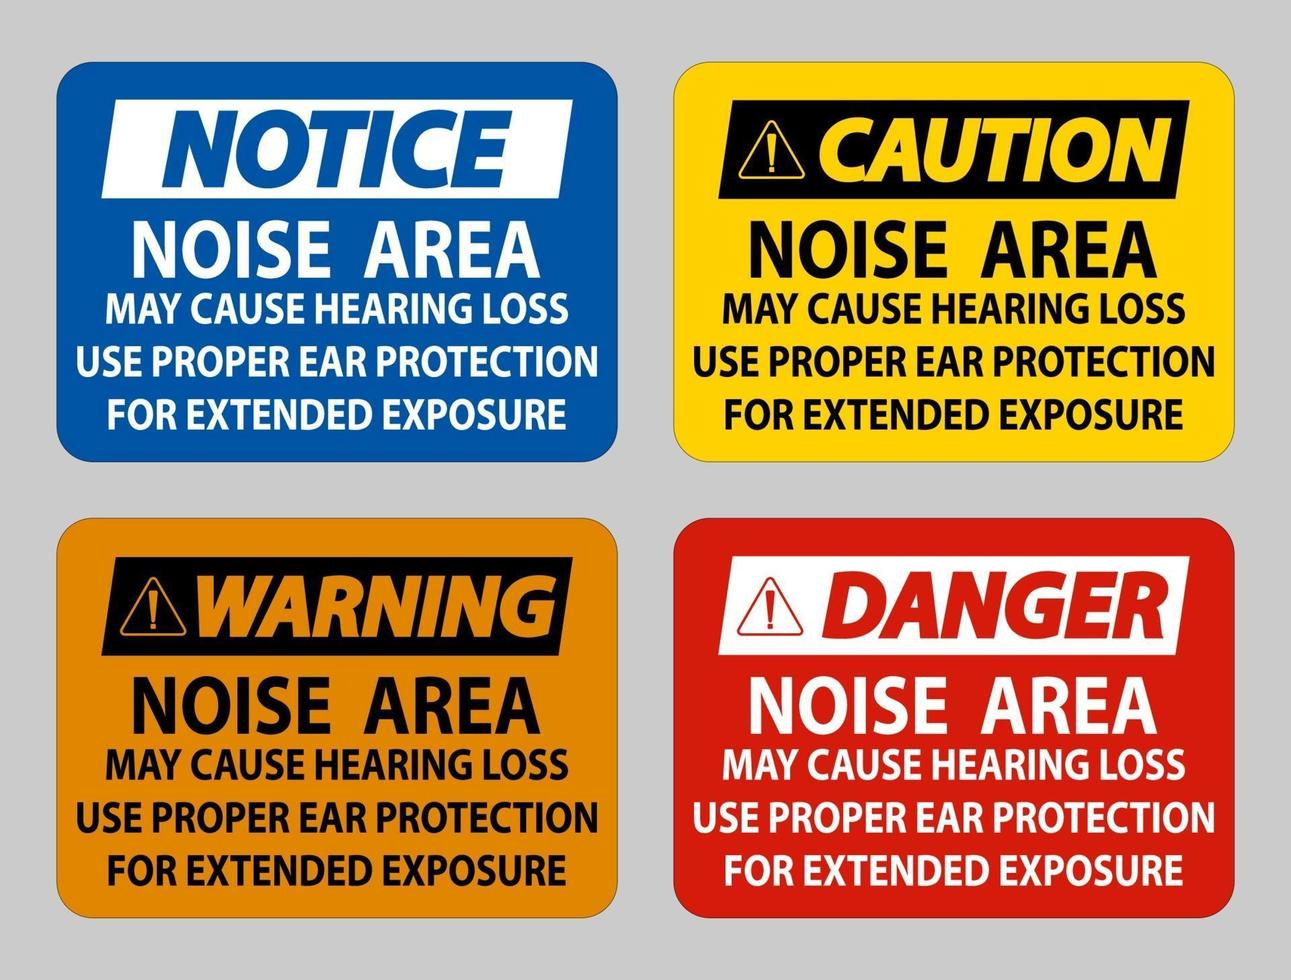 área de ruído pode causar perda de audição, use proteção auditiva adequada para exposição prolongada vetor